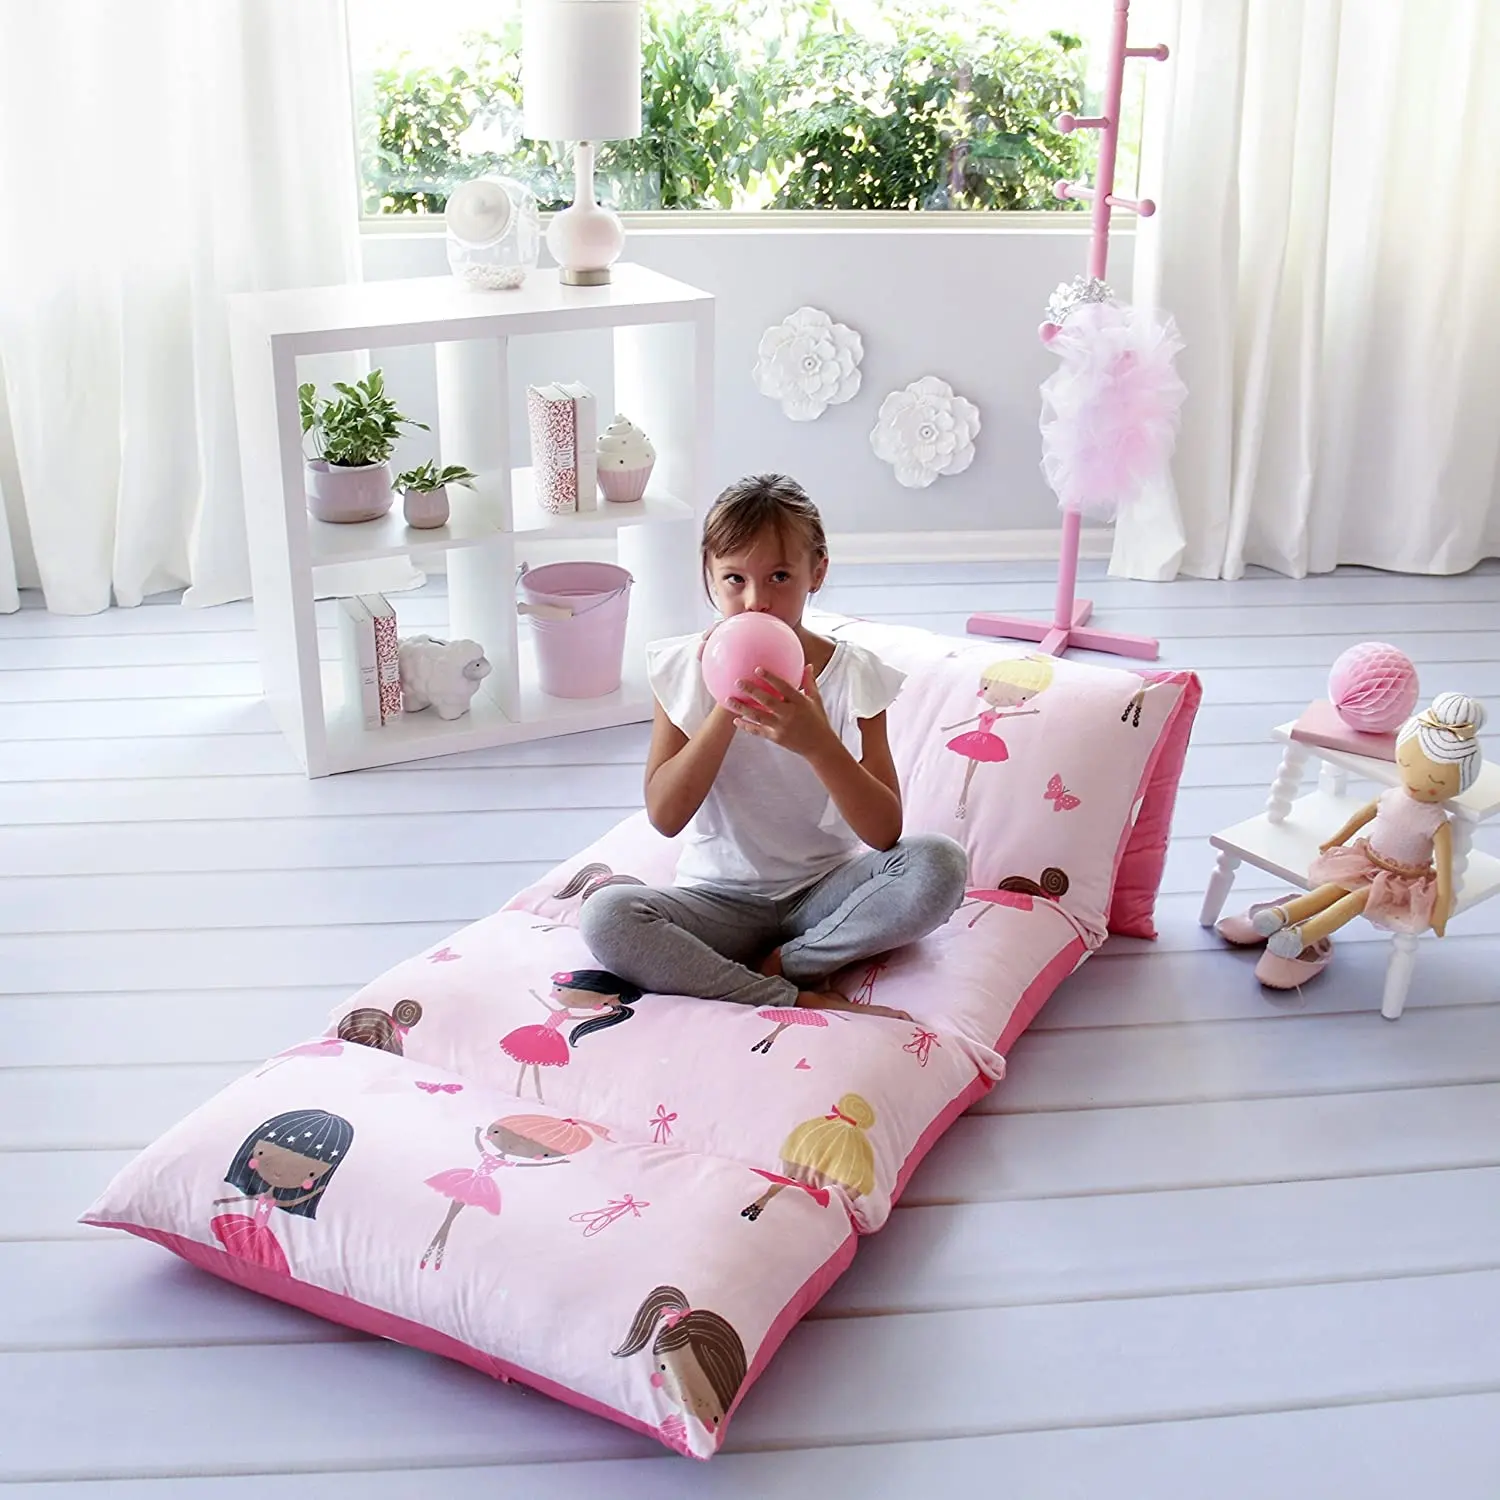 Großhandel neues Design Perfect Recliner Boden kissen für Kinder & Kissen liege zum Lesen von Spielen Home Nap Mats